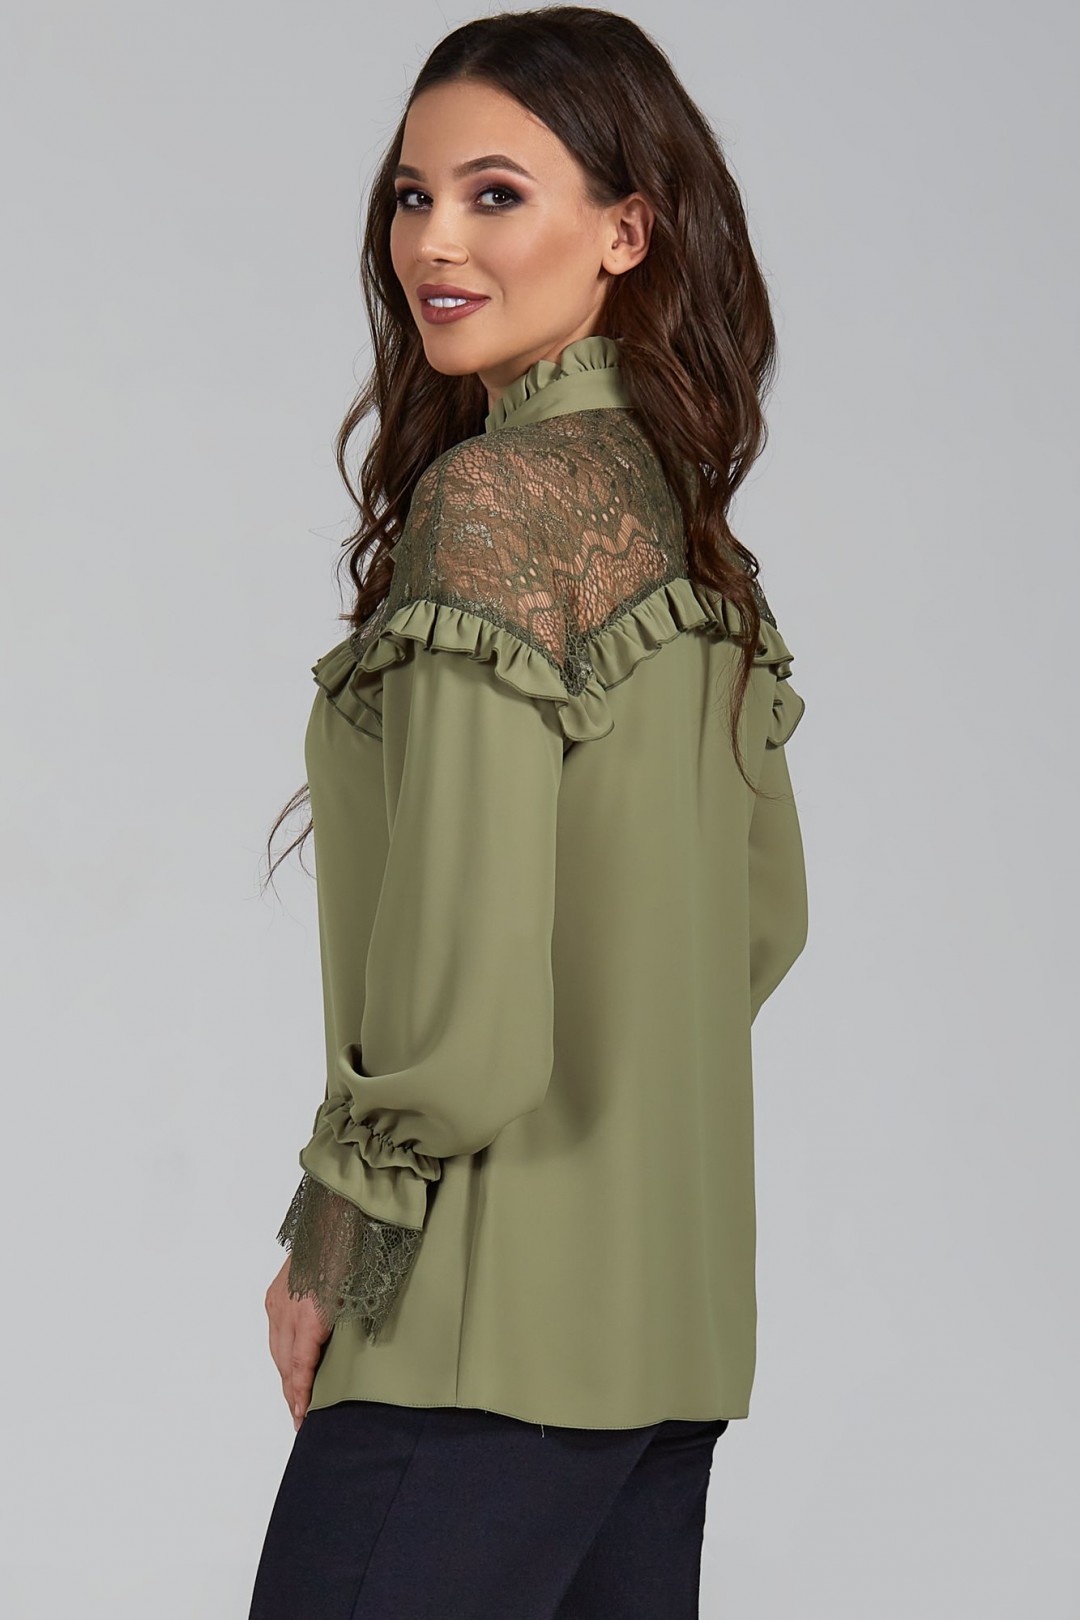 Блузка ТЭФФИ-стиль 1473 олива